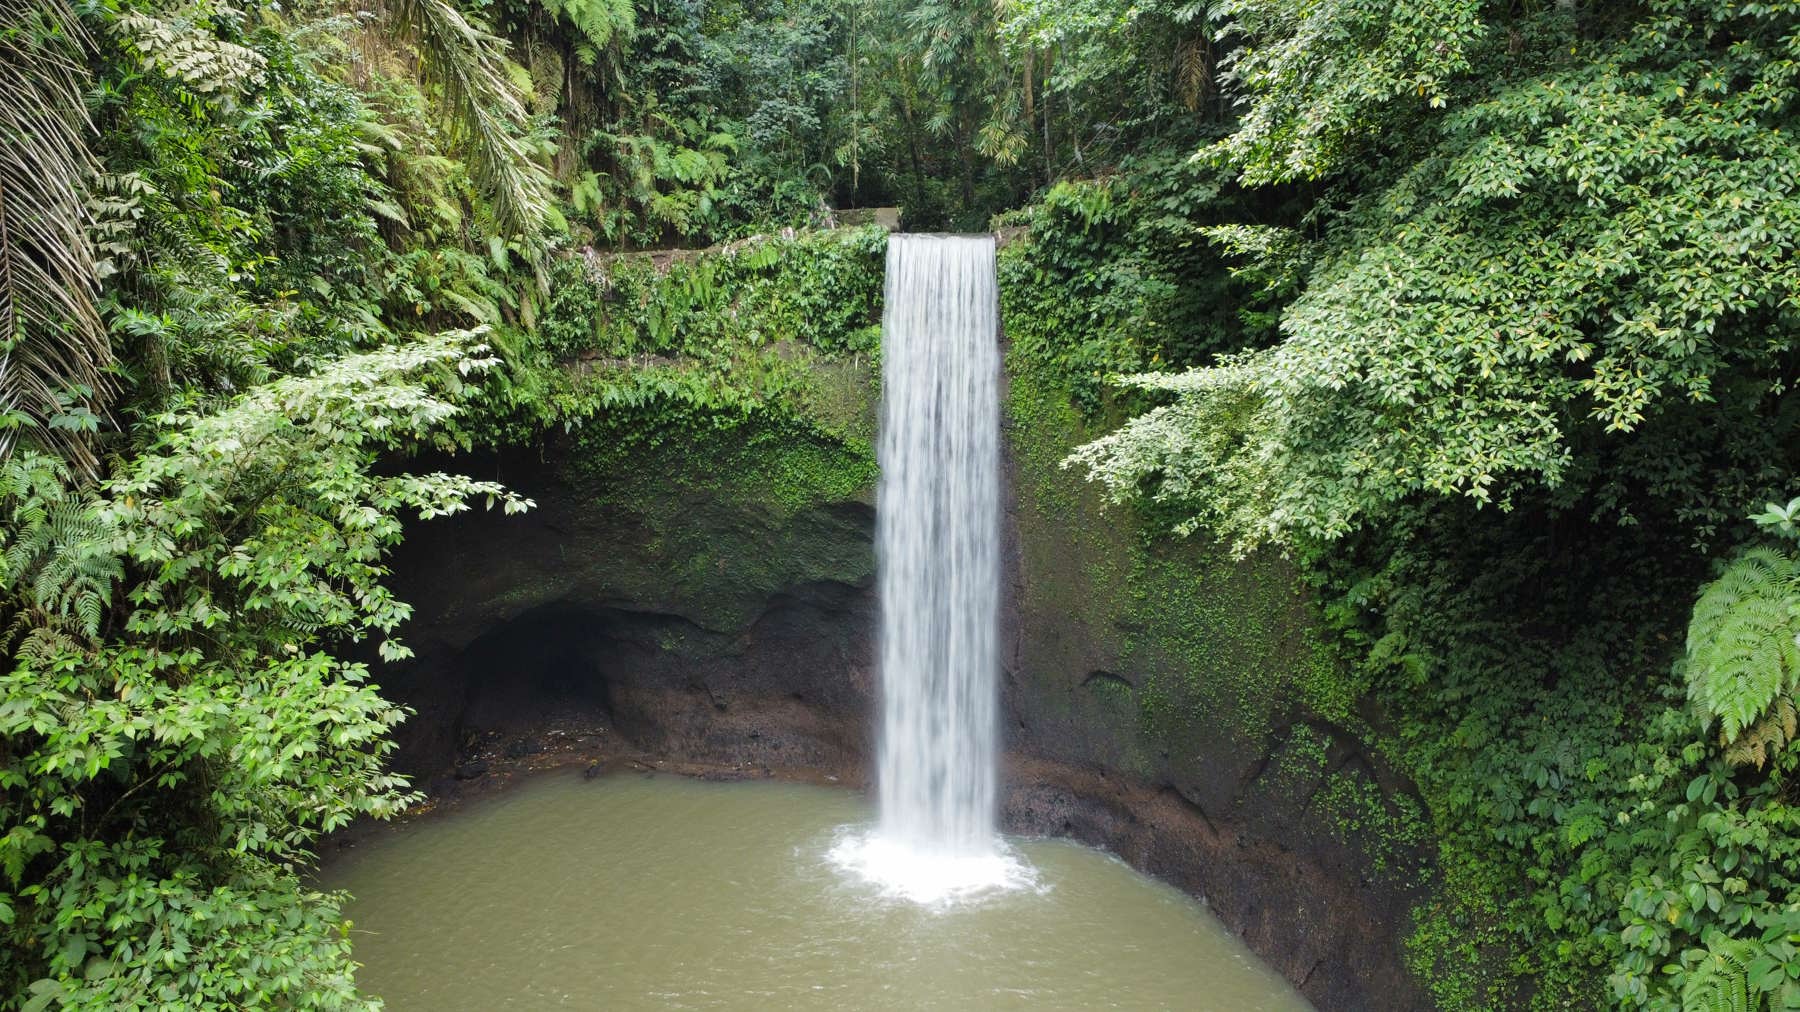 Image Tibumana waterfall